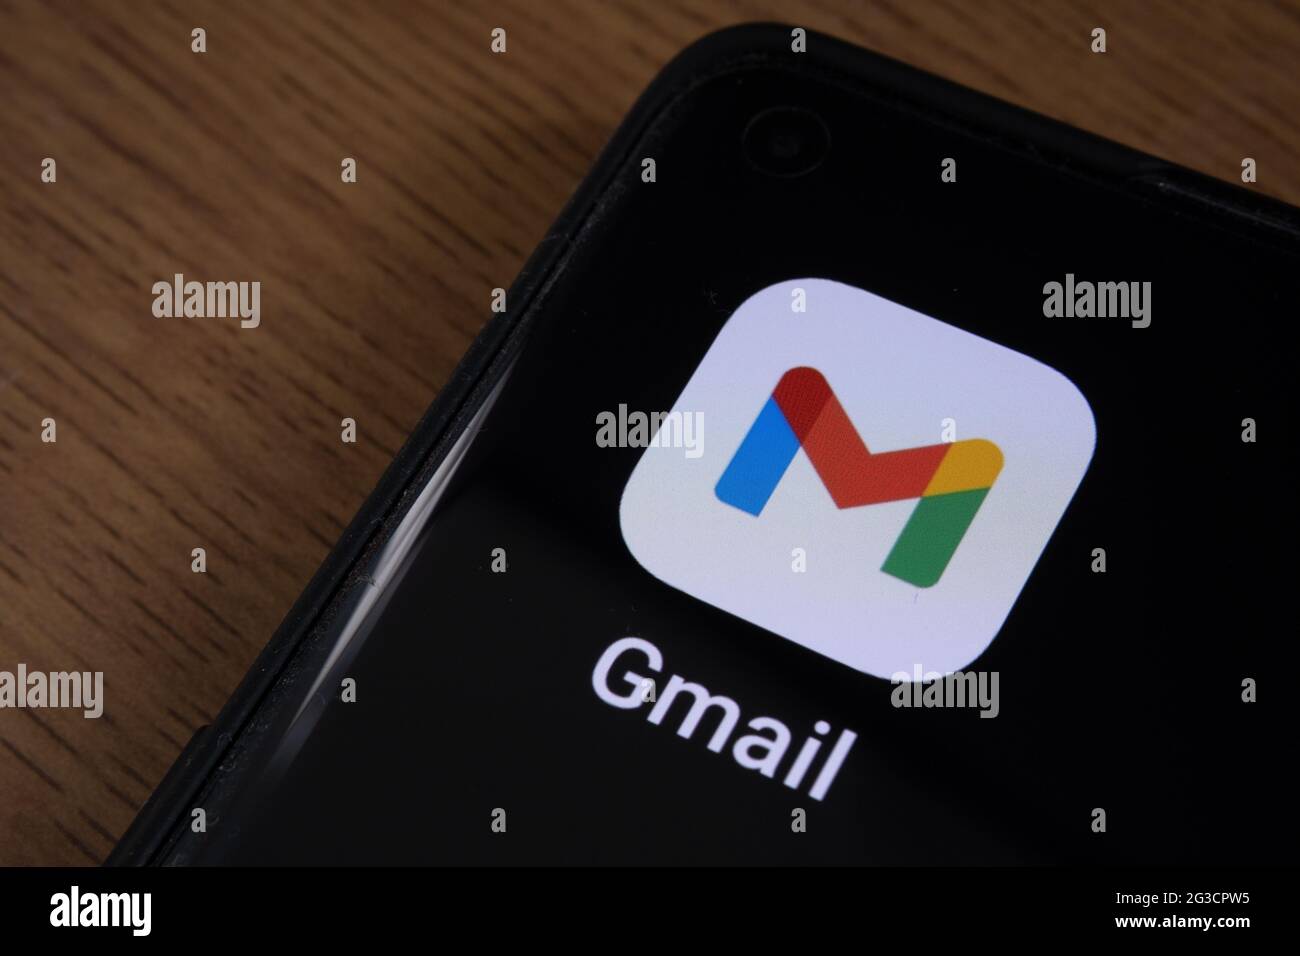 Application Gmail affichée dans l'angle du smartphone placé sur le bureau. Stafford, Royaume-Uni, 15 juin 2021. Banque D'Images